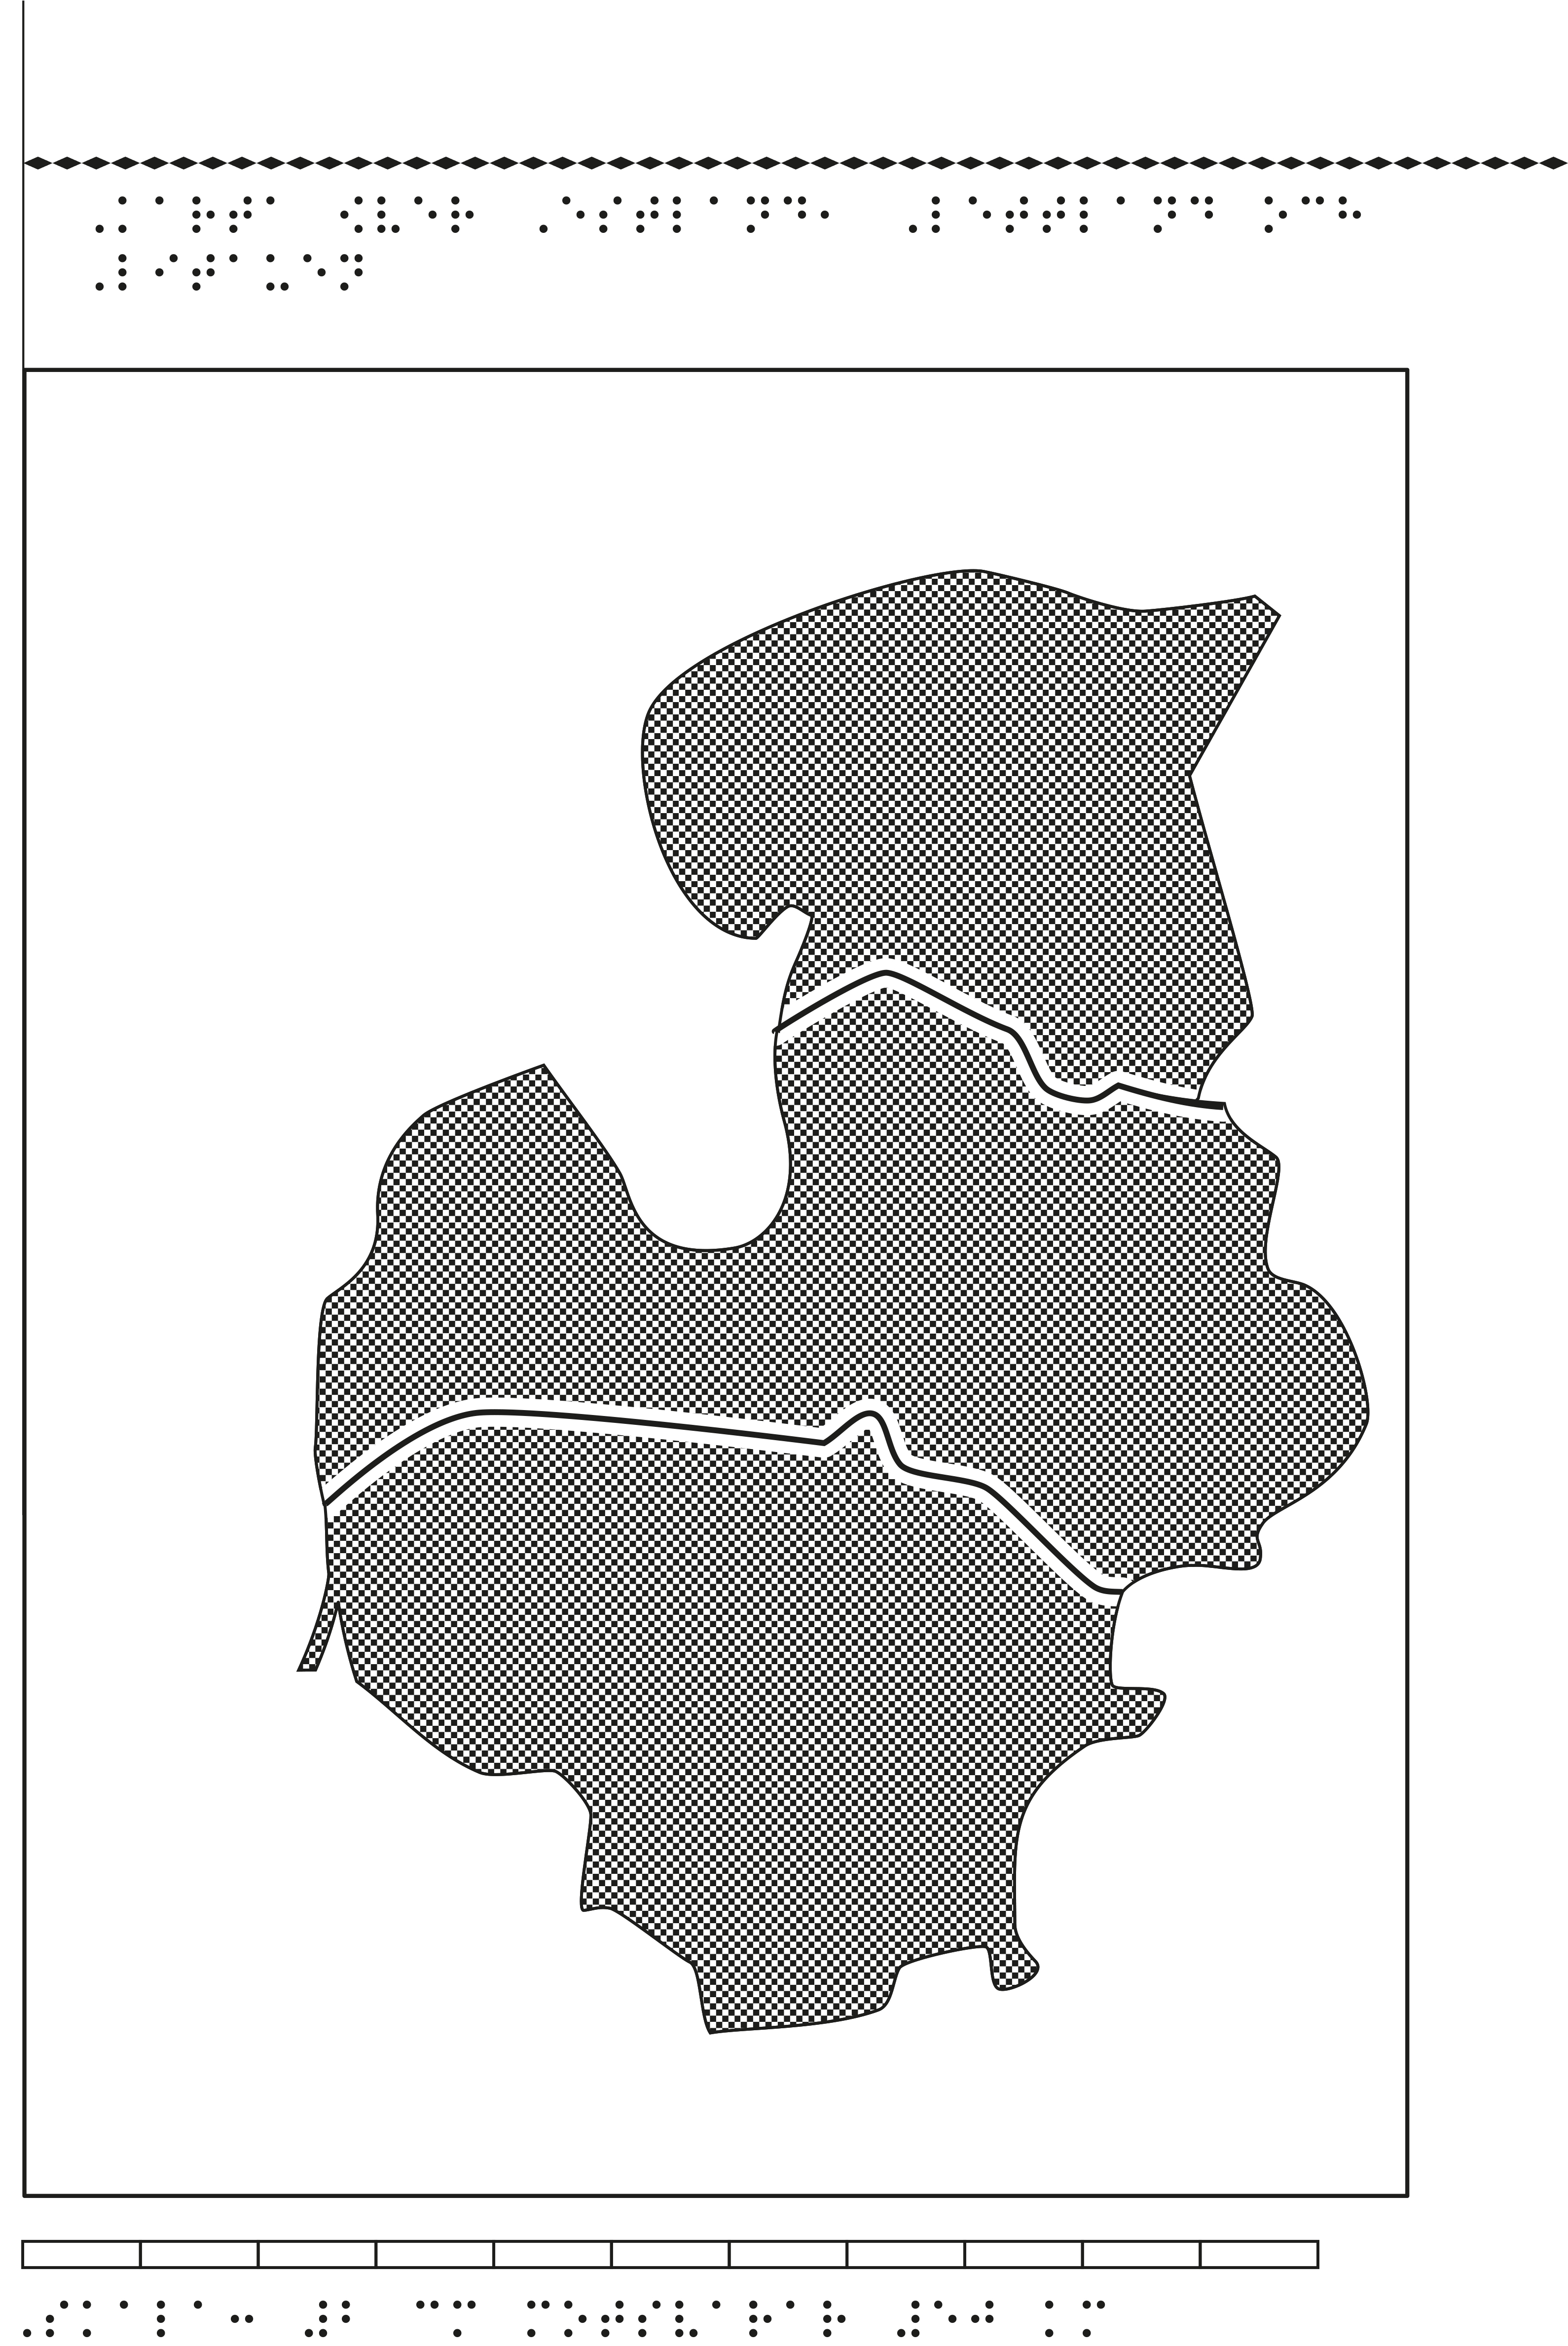 Karta av Estland, Lettland och Litauen i relief med tillhörande punktskrift.